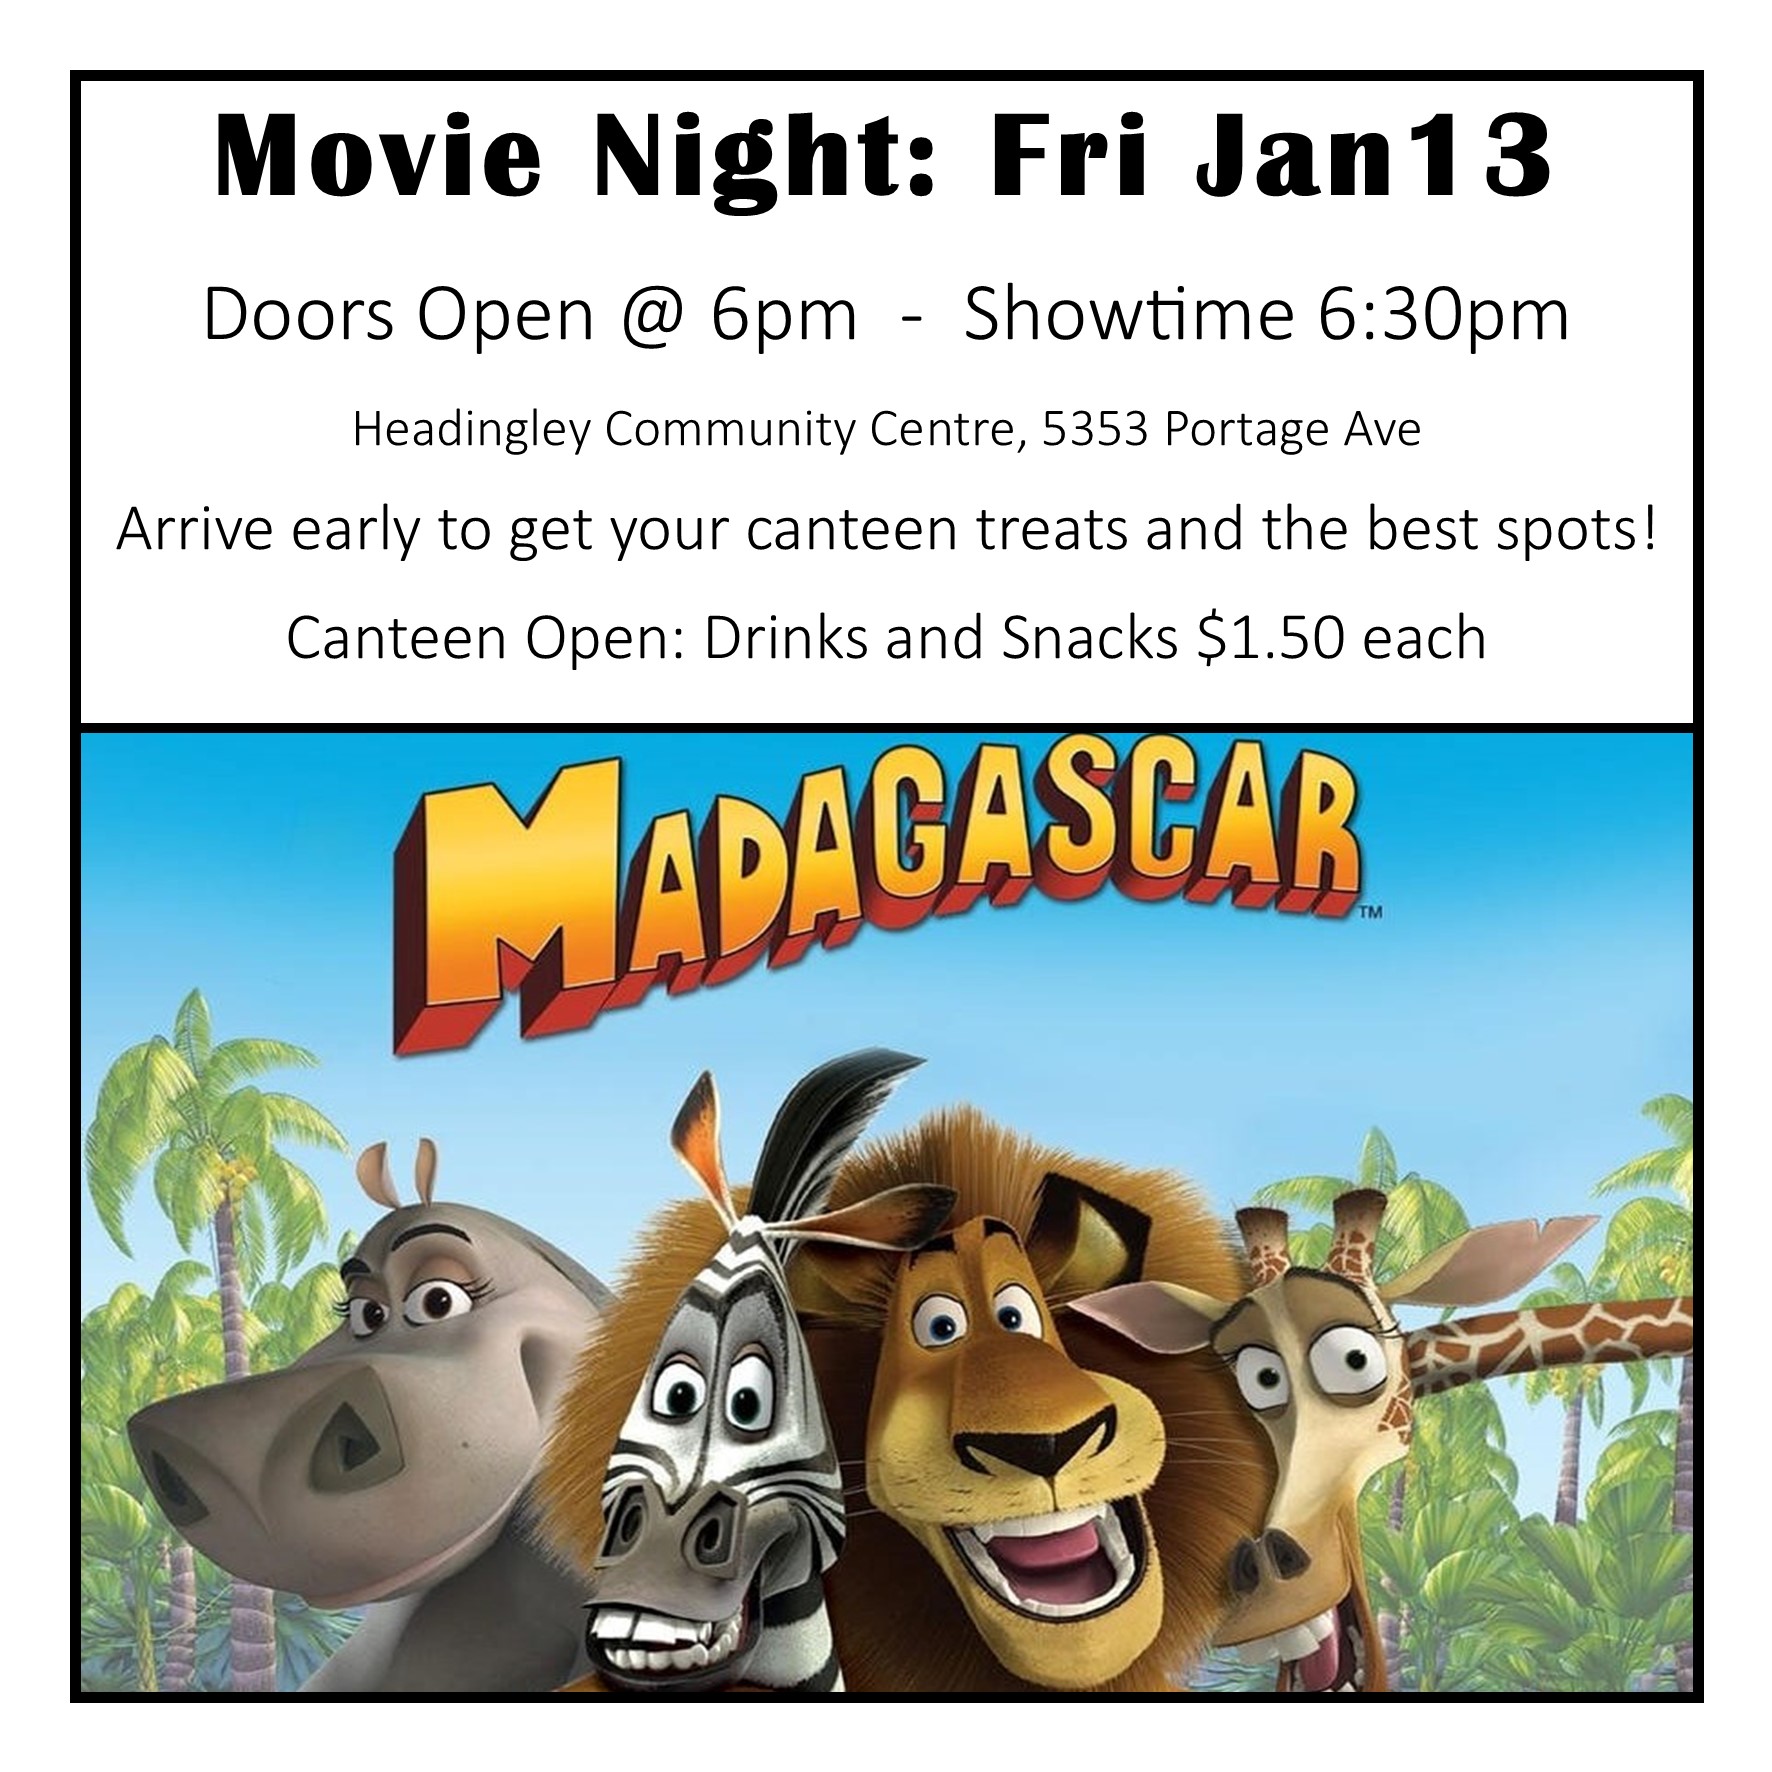 Family Movie Night – Madagascar